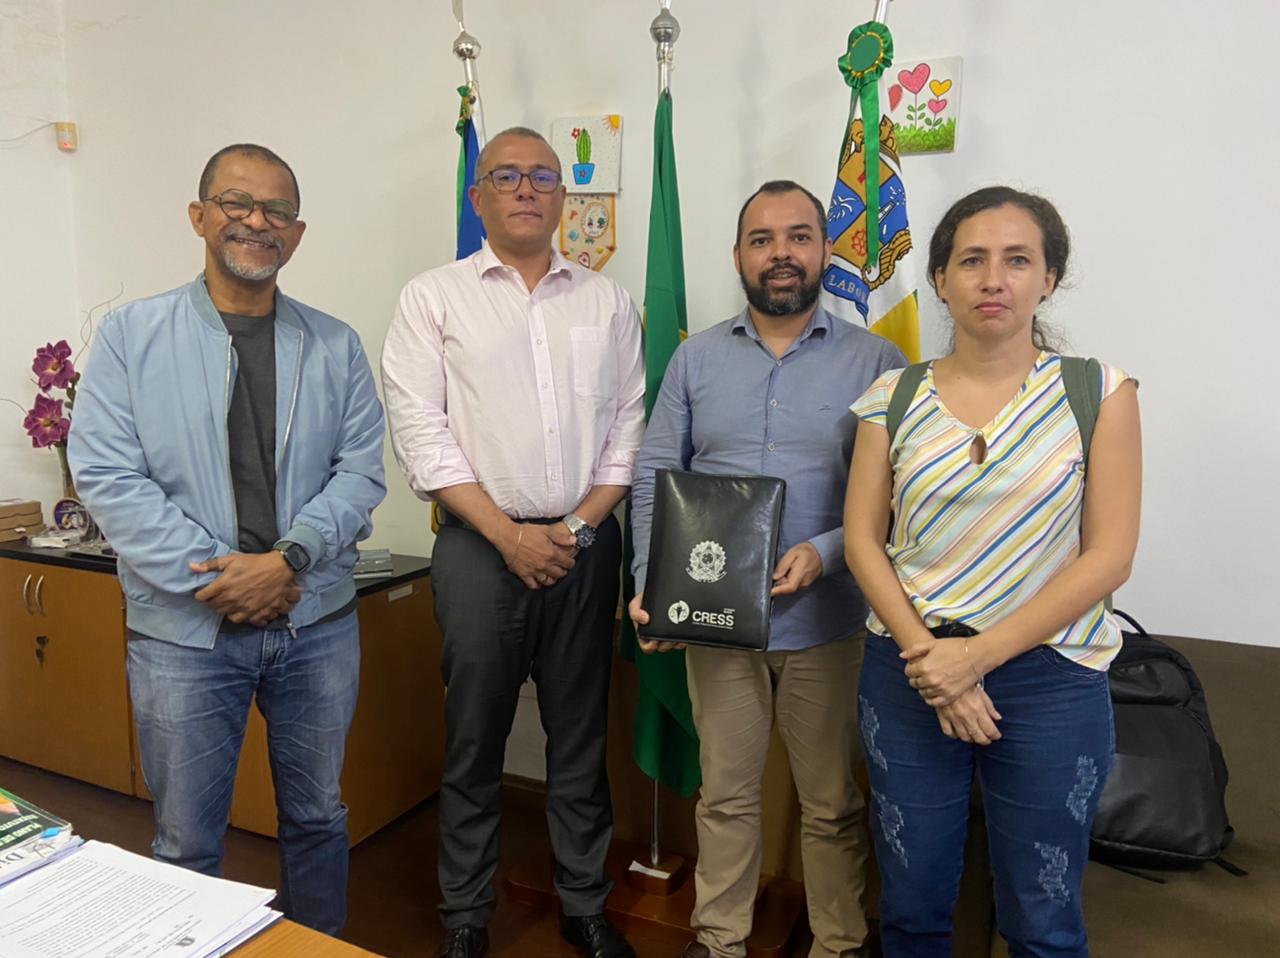 Conselheiros do CRESS-SE realizam reunião com vereador Bittencourt e secretário de Educação de Aracaju